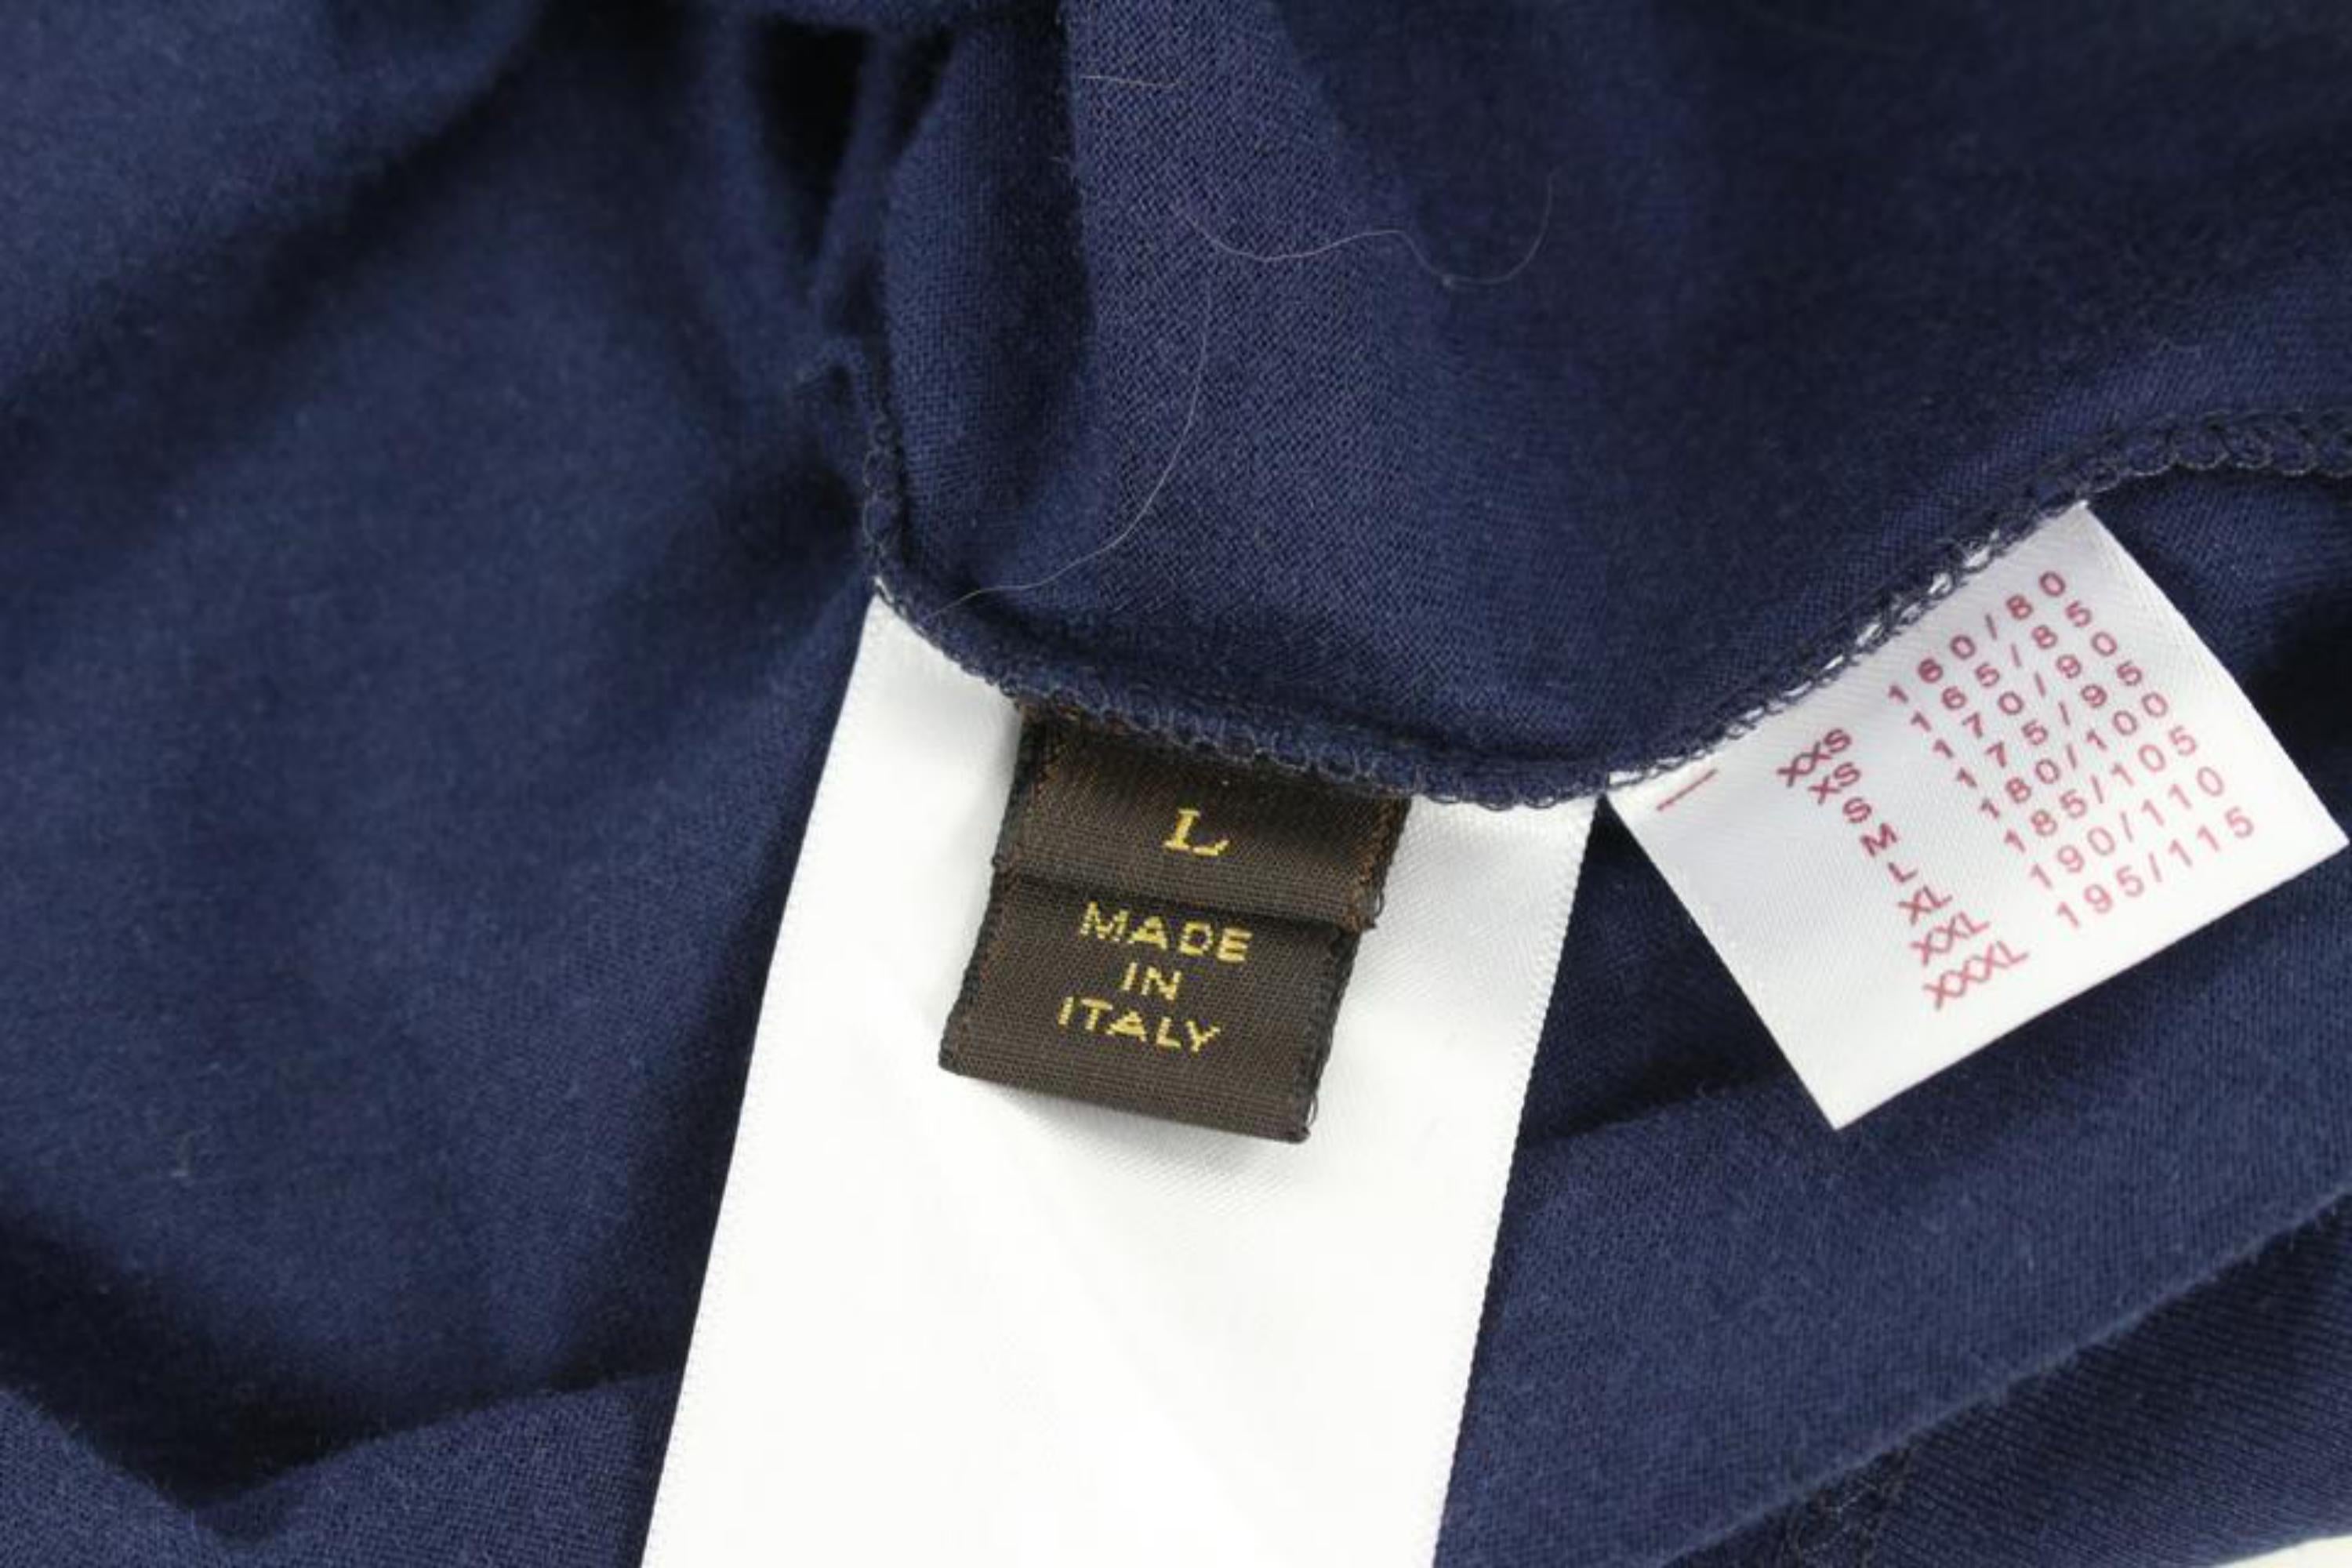 Shop Louis Vuitton Classic Vuitton Paris T-Shirt 1ABCFP by Fujistyle